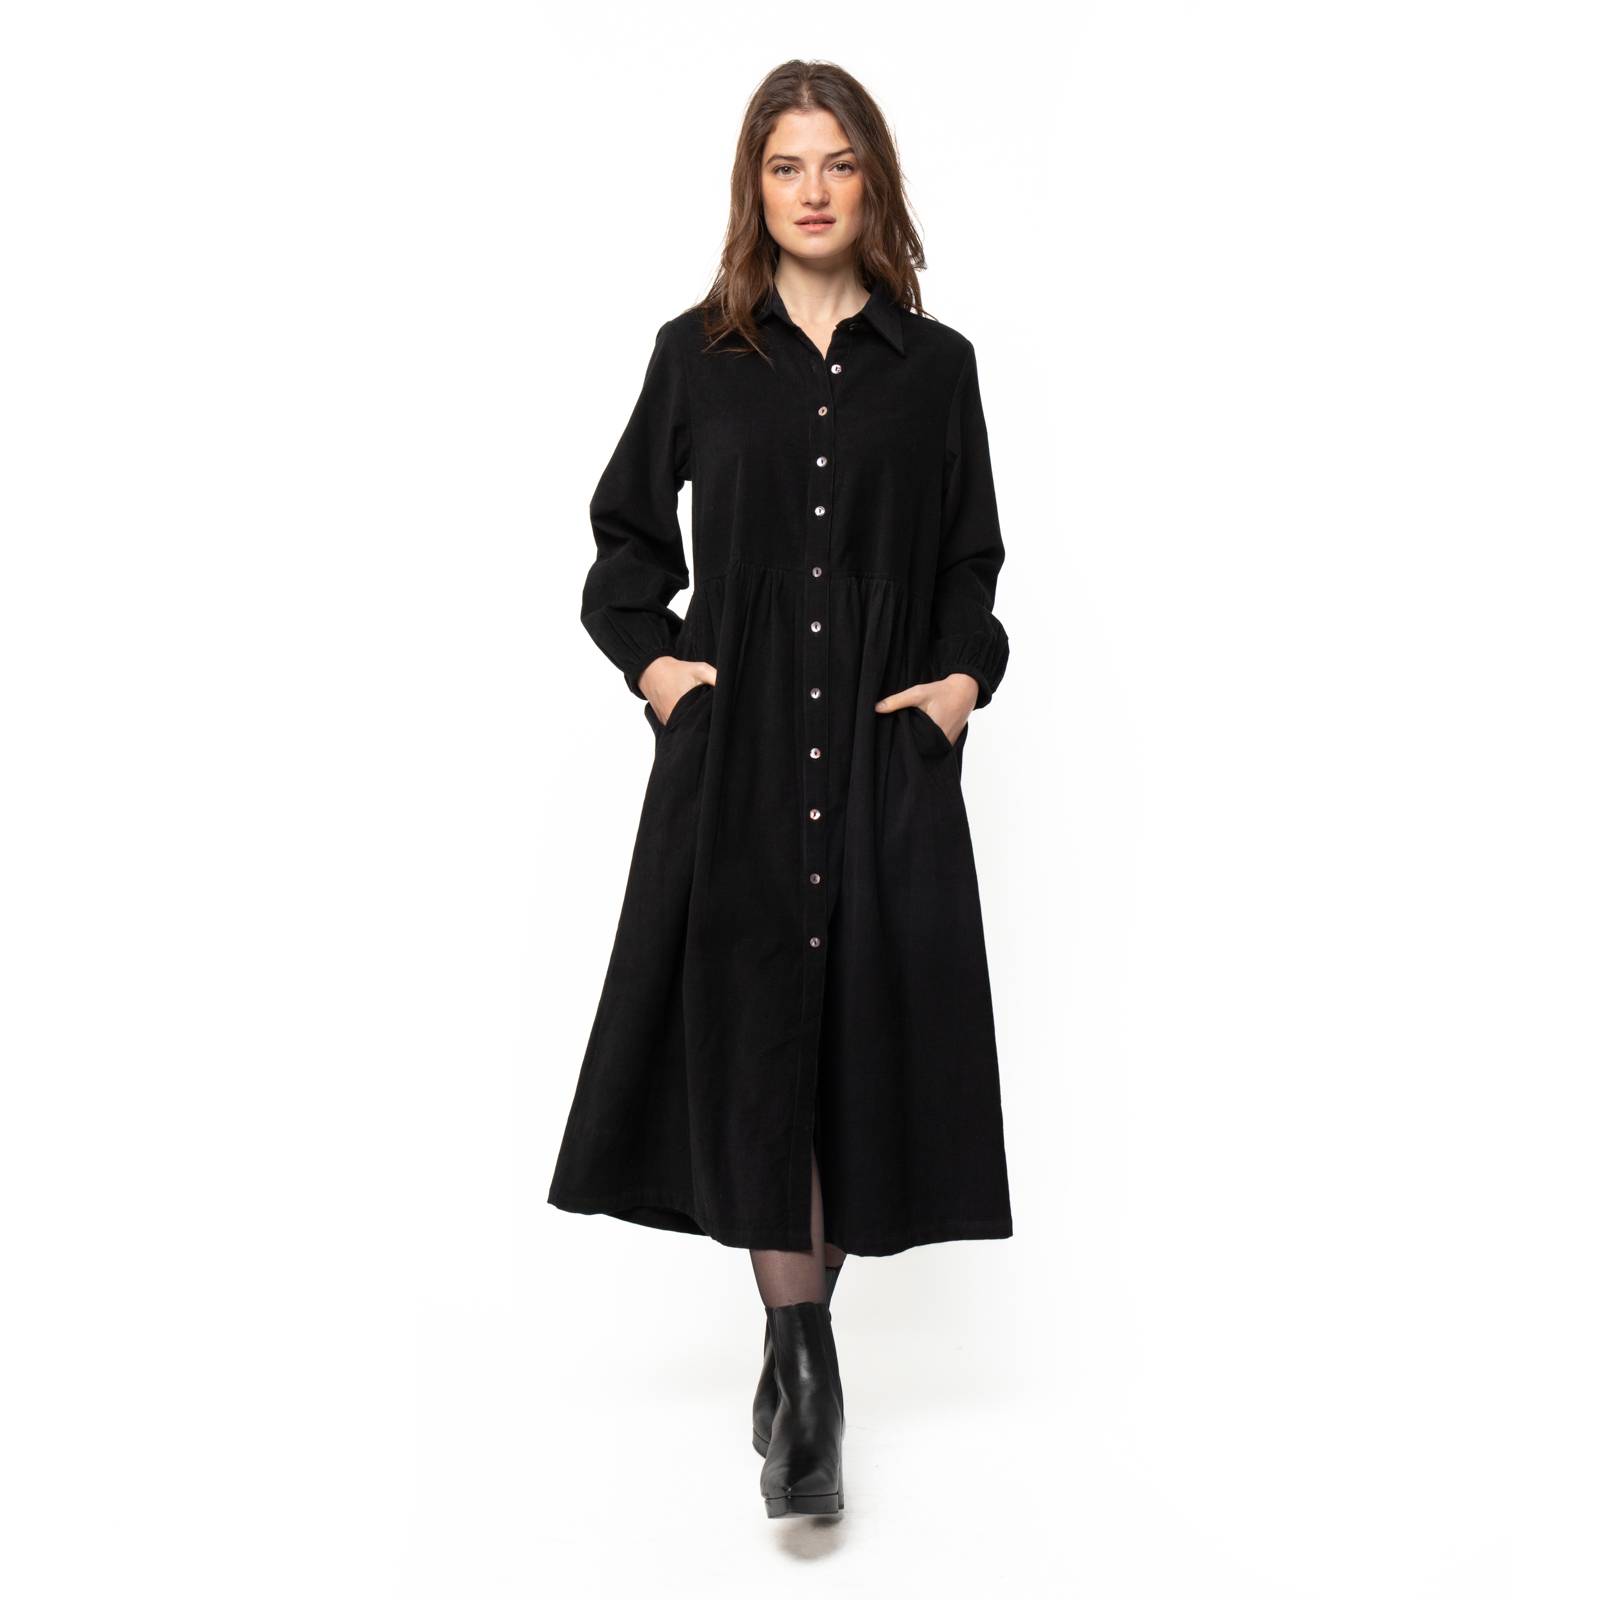 Robes Paulette Dress Velvet 100% Coton Ethnique VR3626 BLACK